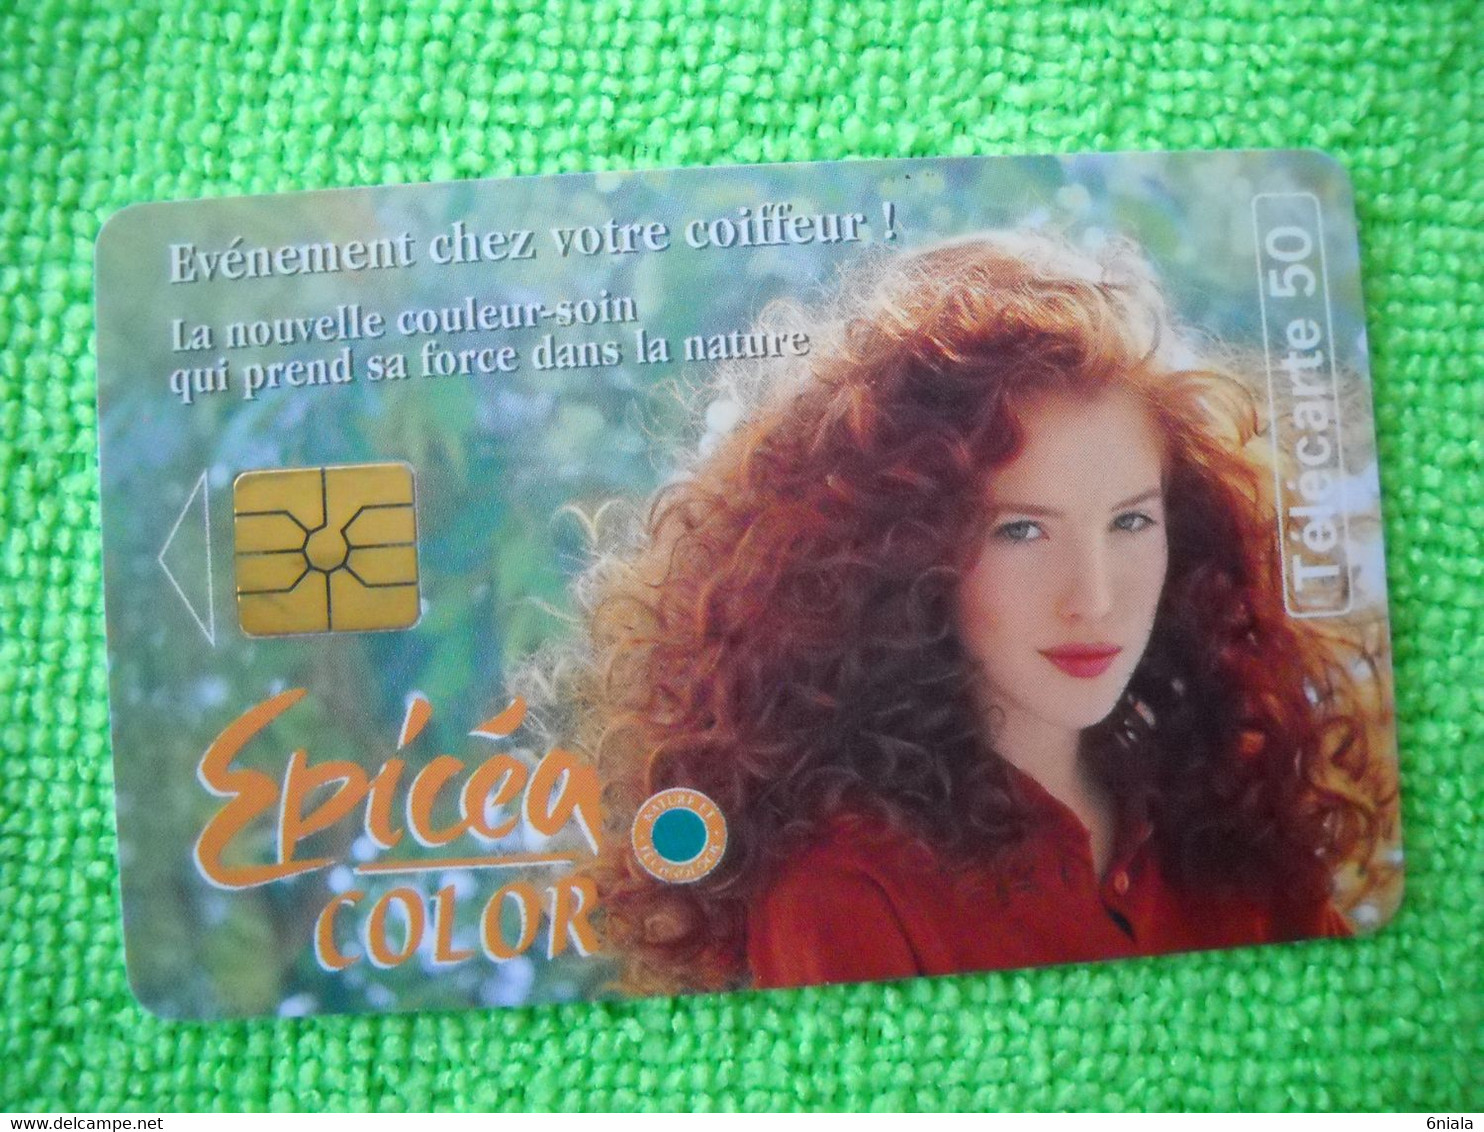 7110 Télécarte Collection EPICEA COLOR  Coloration Cheveux Shampoing     50u  ( Recto Verso)  Carte Téléphonique - Pubblicitari